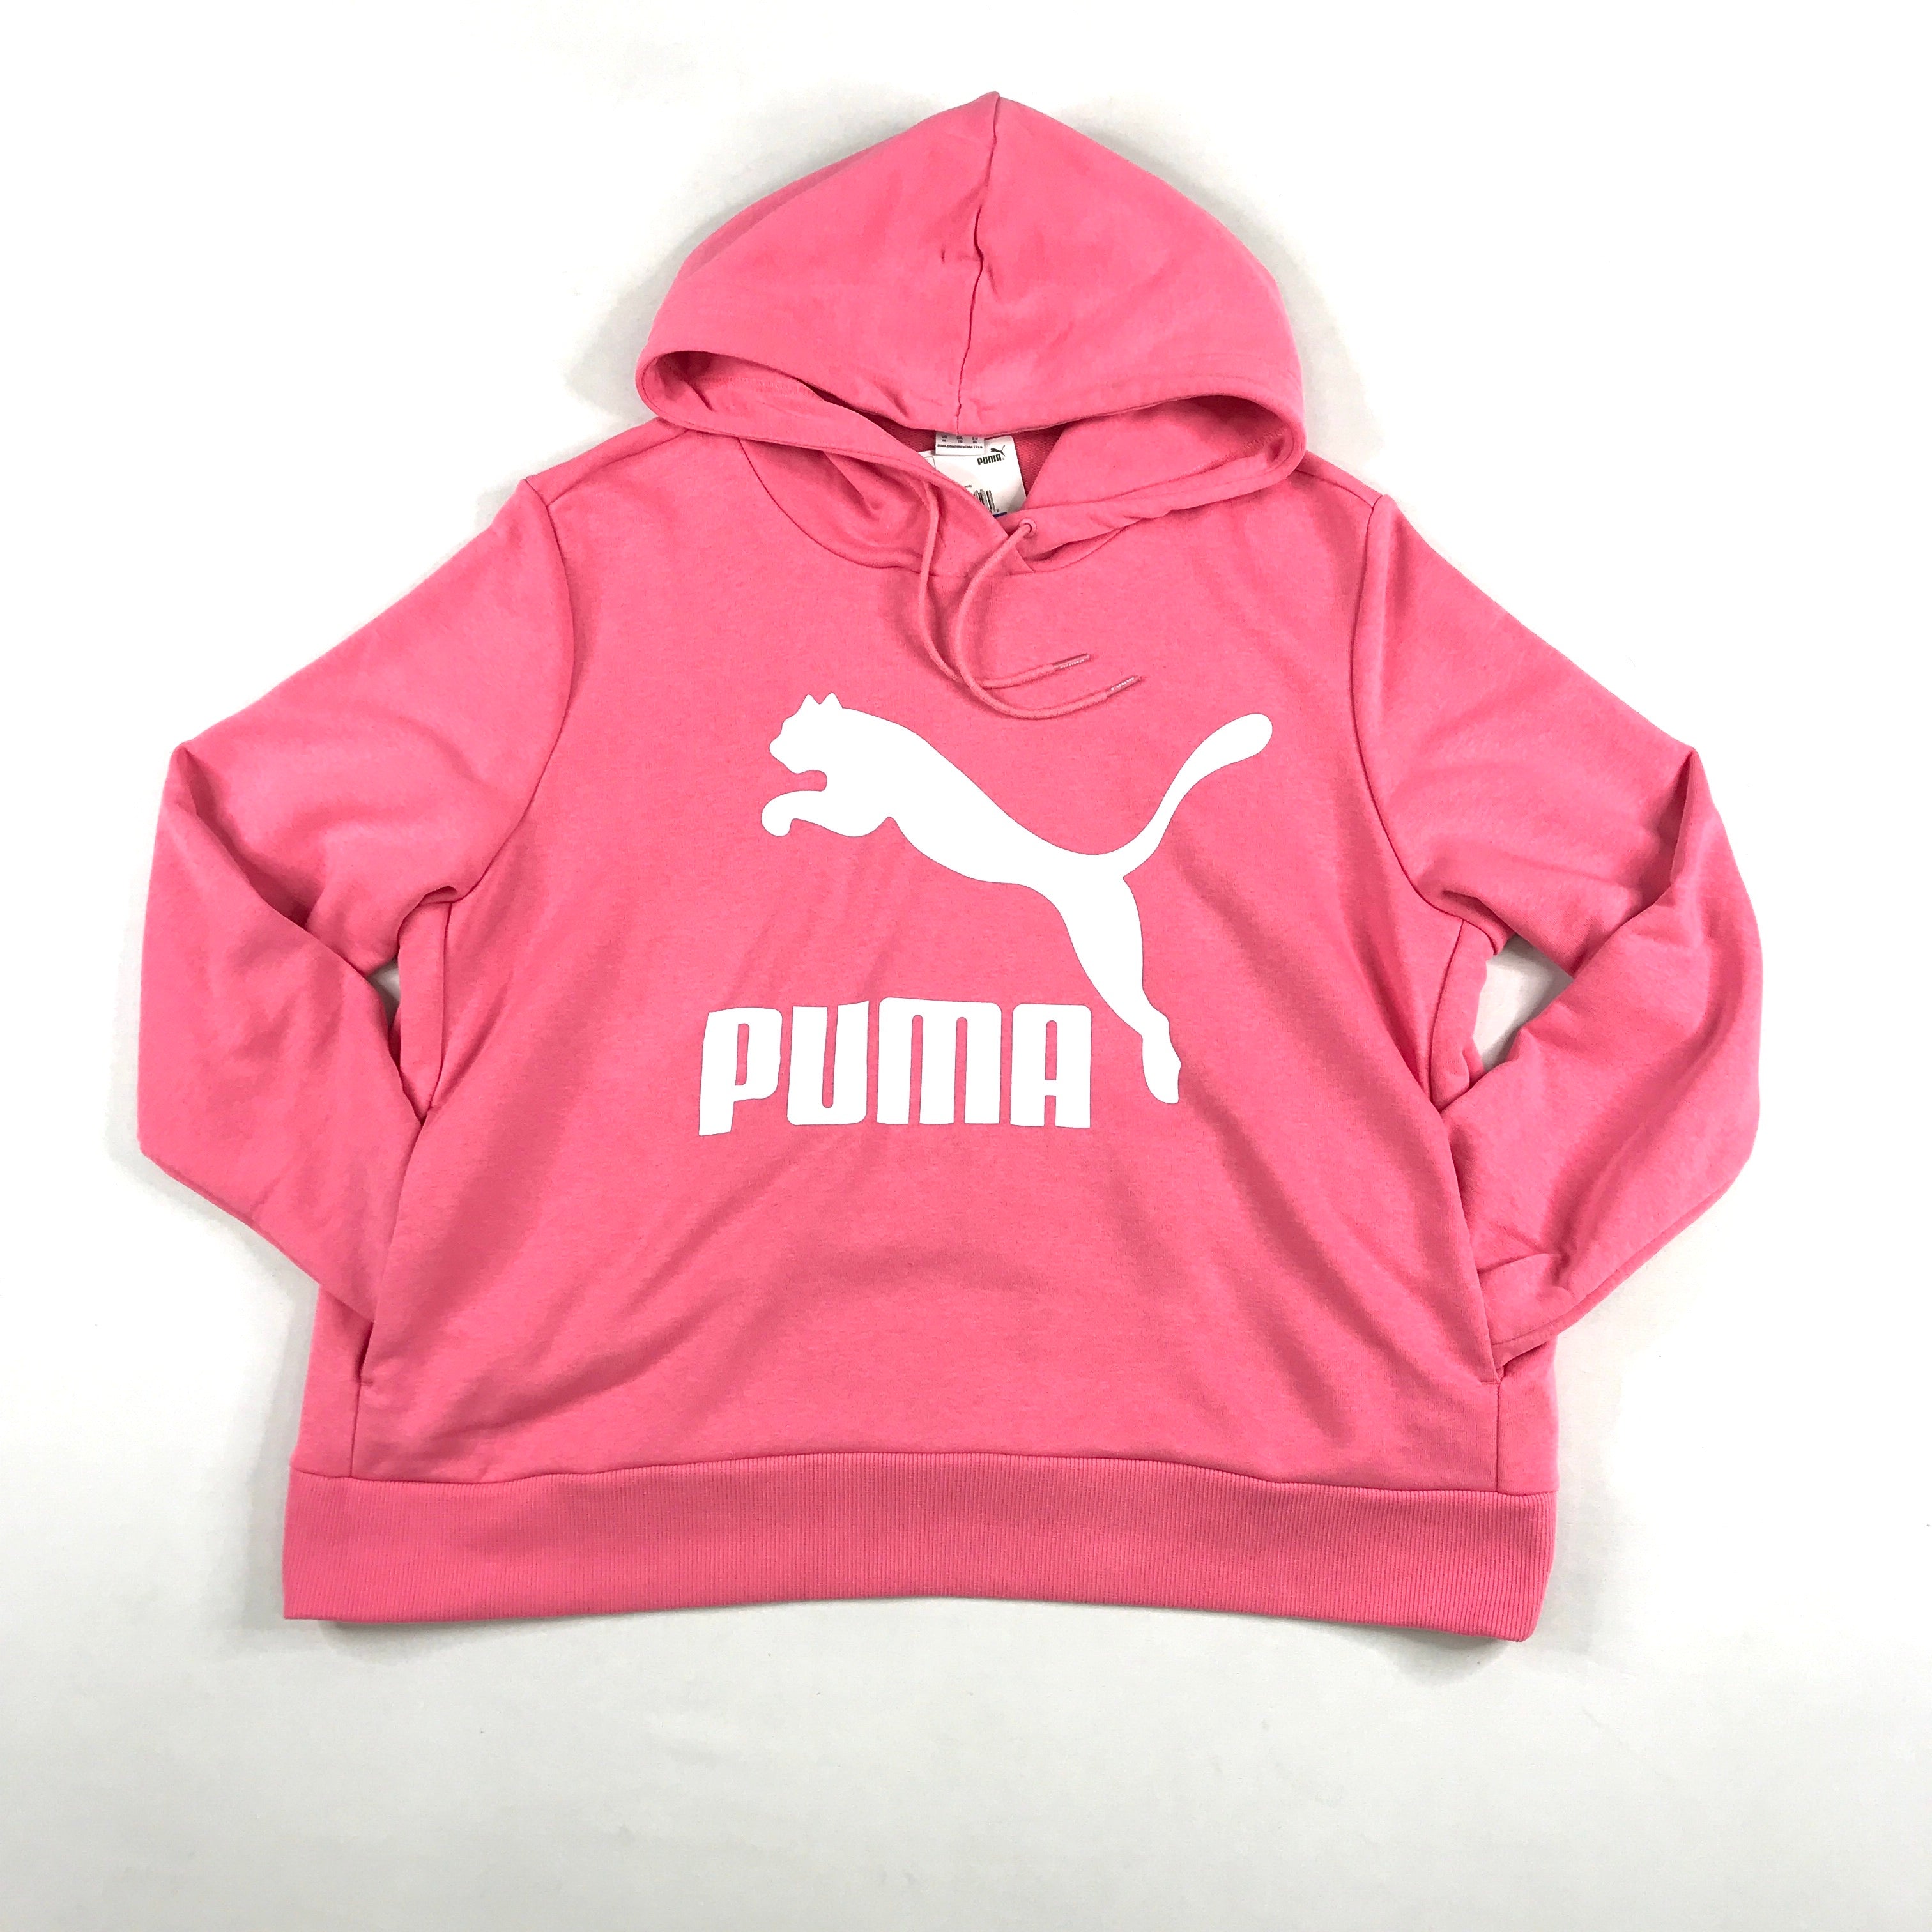 Puma classics logo hoodie in bubblegum